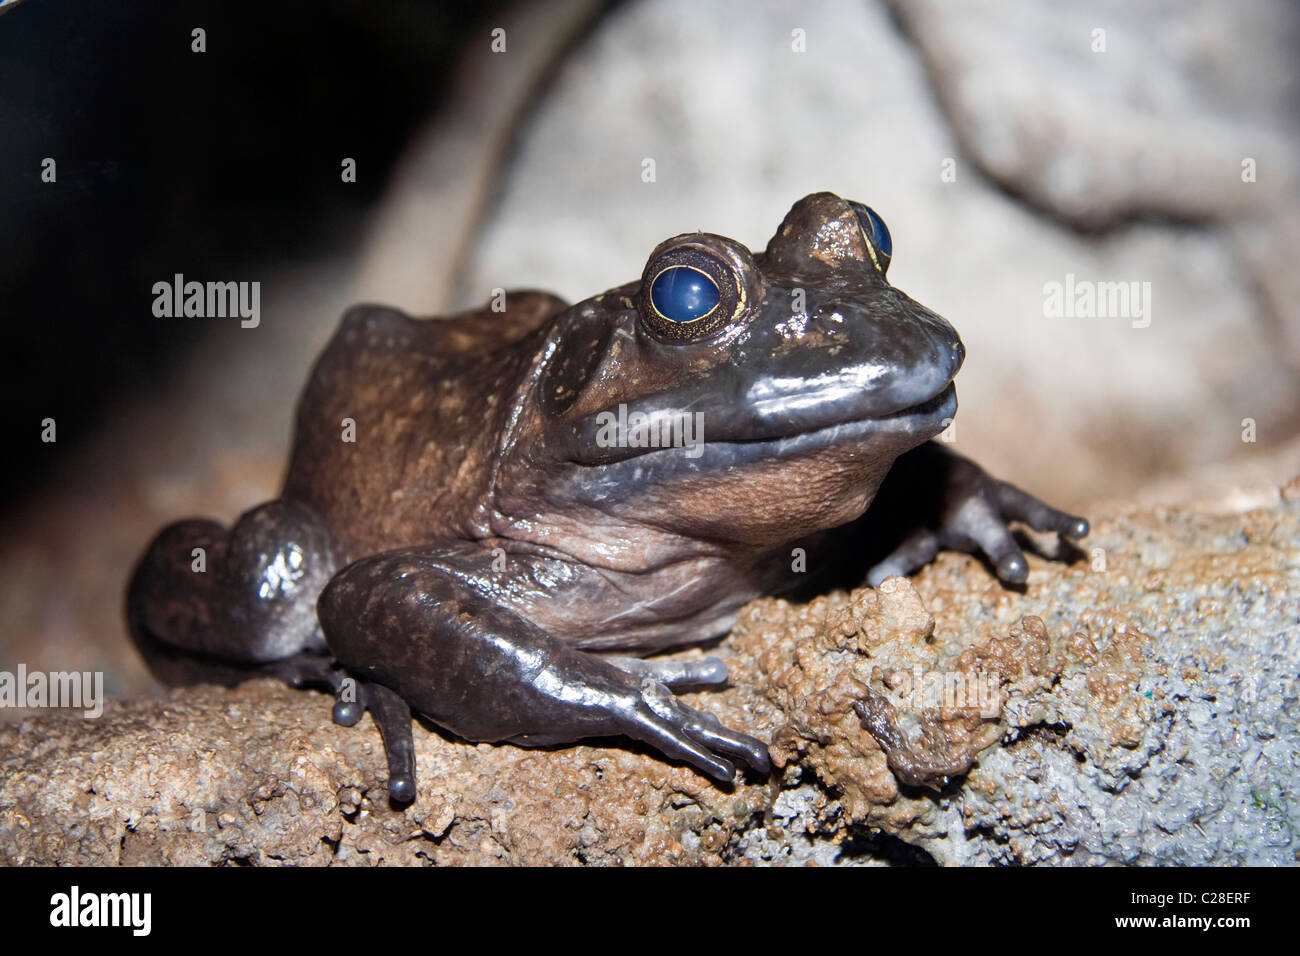 The American bullfrog (Rana catesbeiana) Stock Photo